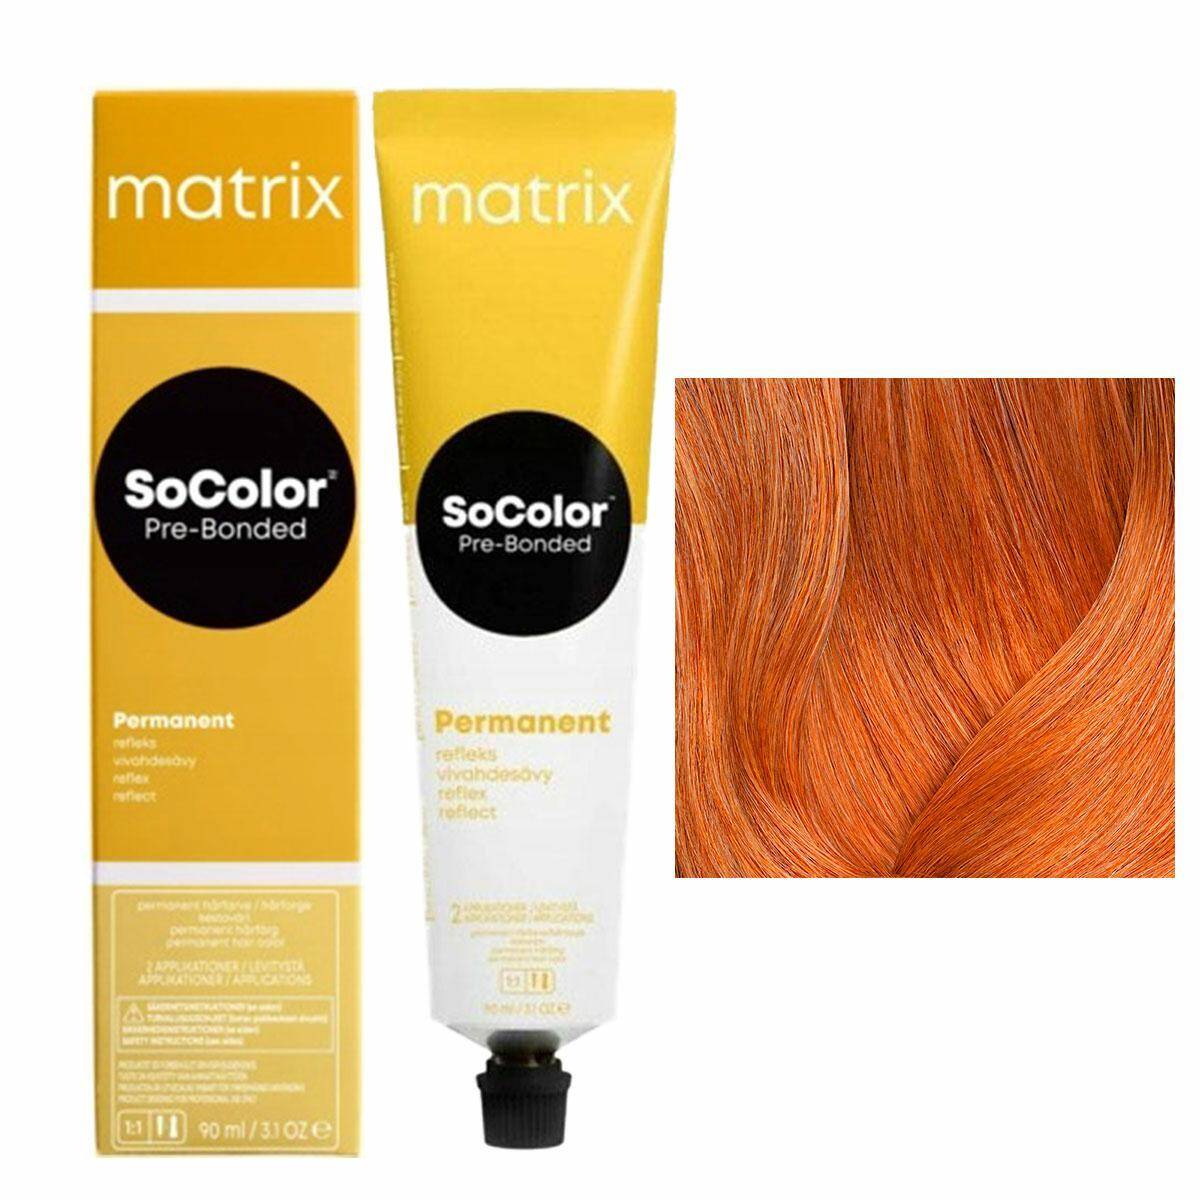 Matrix SoColor Pre-Bonded Farba do włosów - RED SR-C Miedziany, trwała koloryzacja 90ml